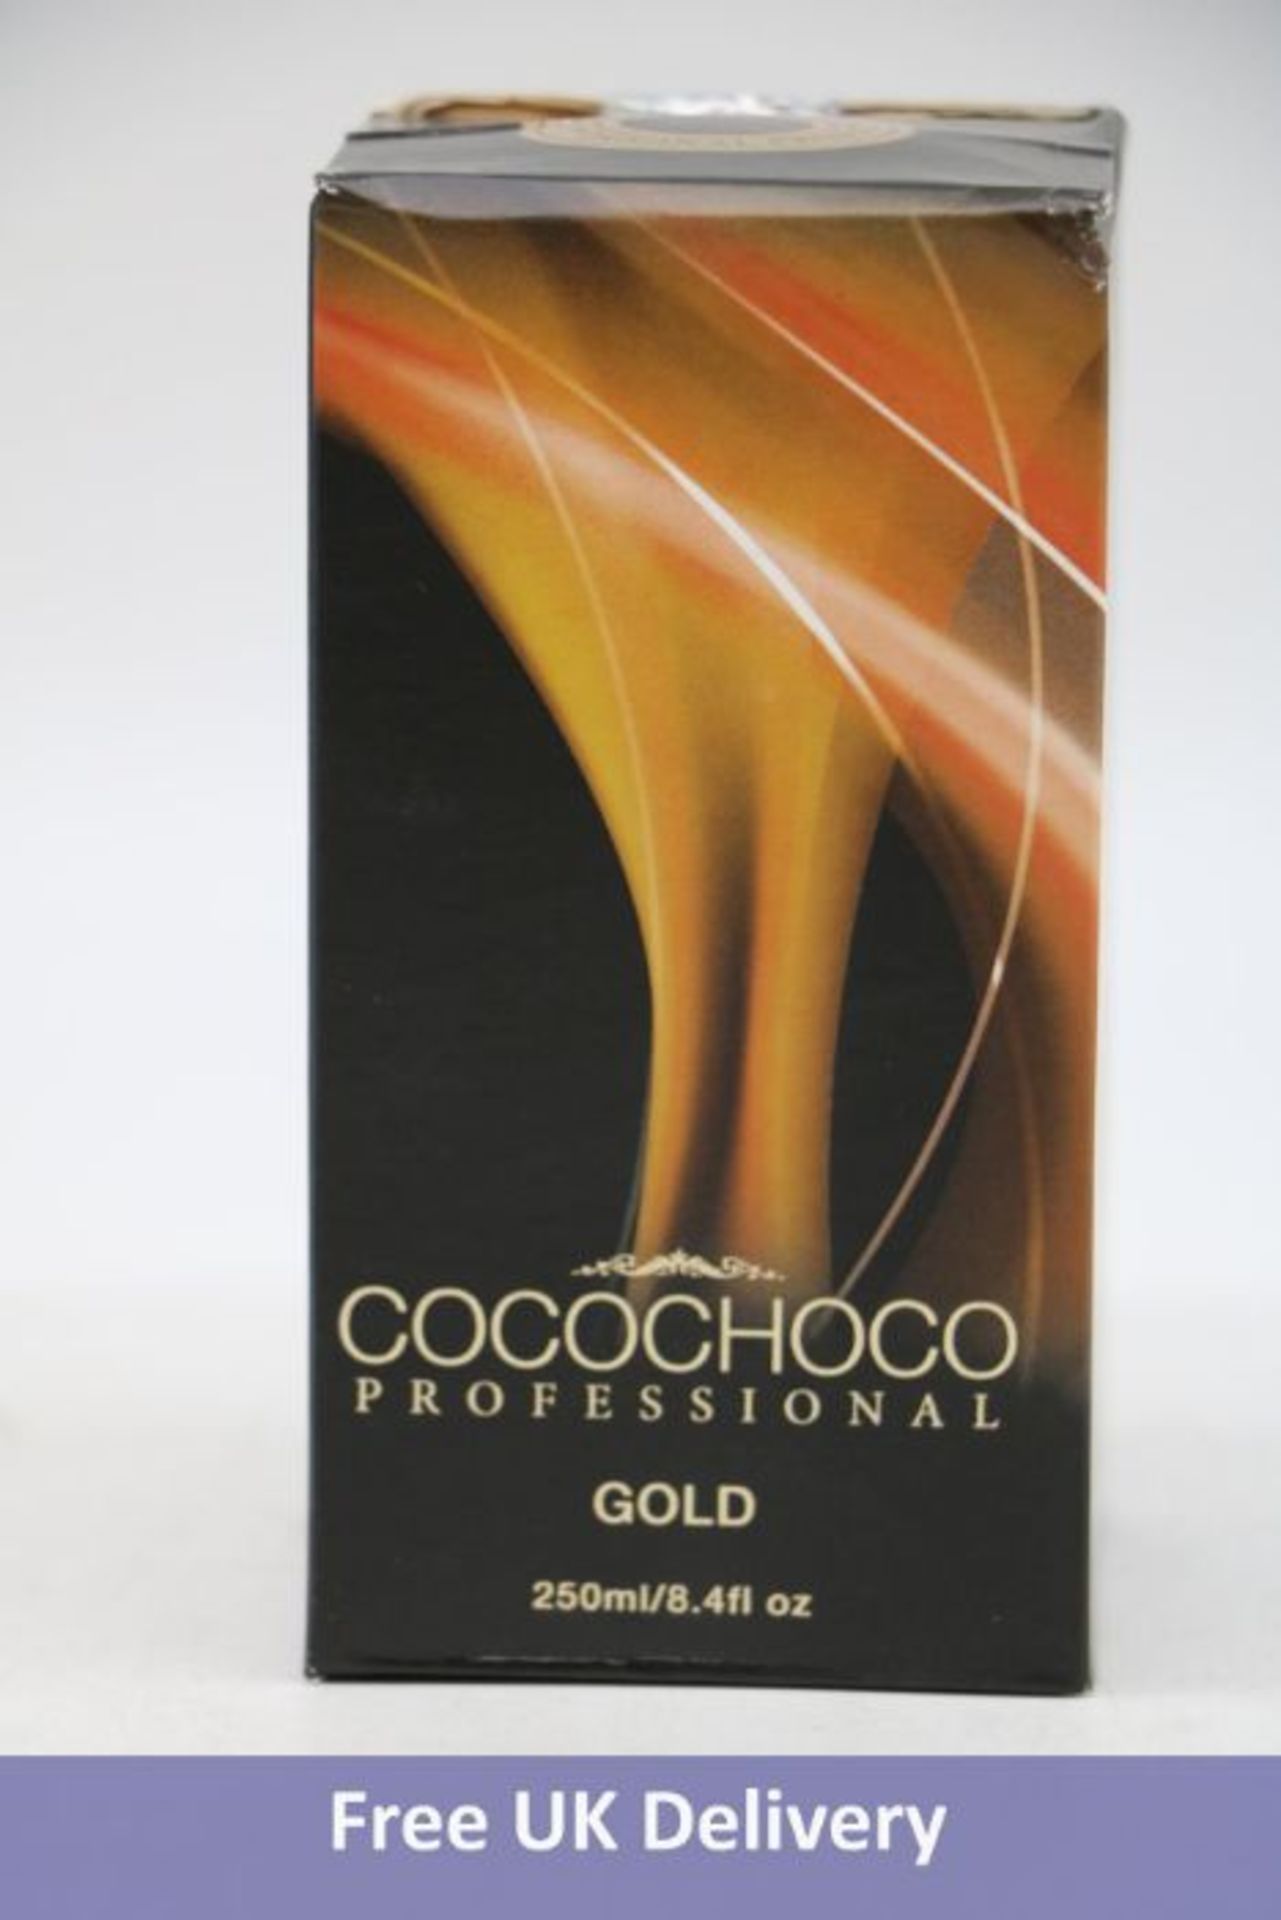 Seven Cocochoco Professional Gold Premium Keratin, 250 ml - Image 5 of 7